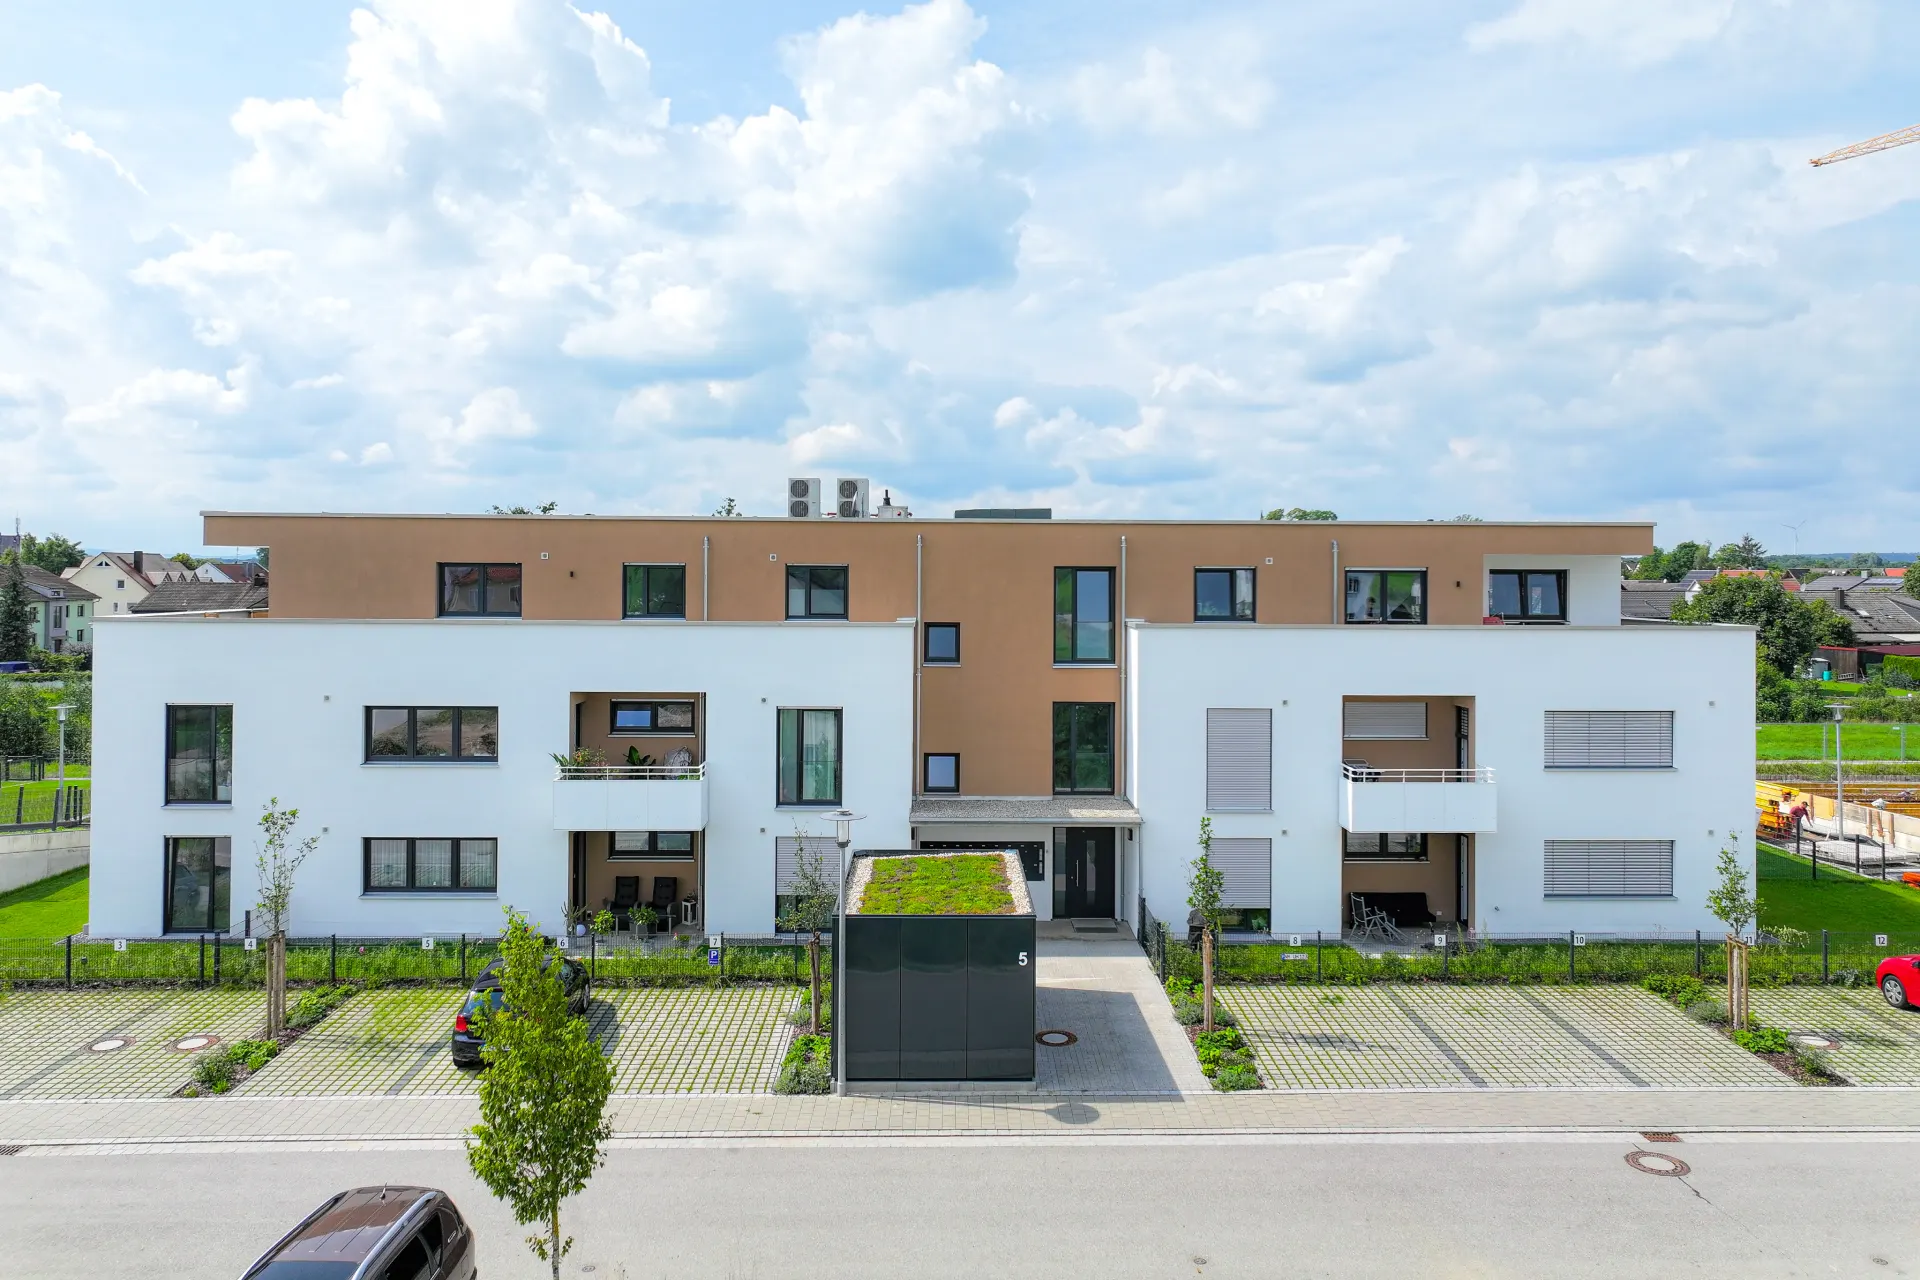 Luftaufnahme eines Mehrfamilienhauses im 32k UHD-Format, Neue Sachlichkeit, Schweizer Stil, traumhafte Qualität, Bauhaus-Stil